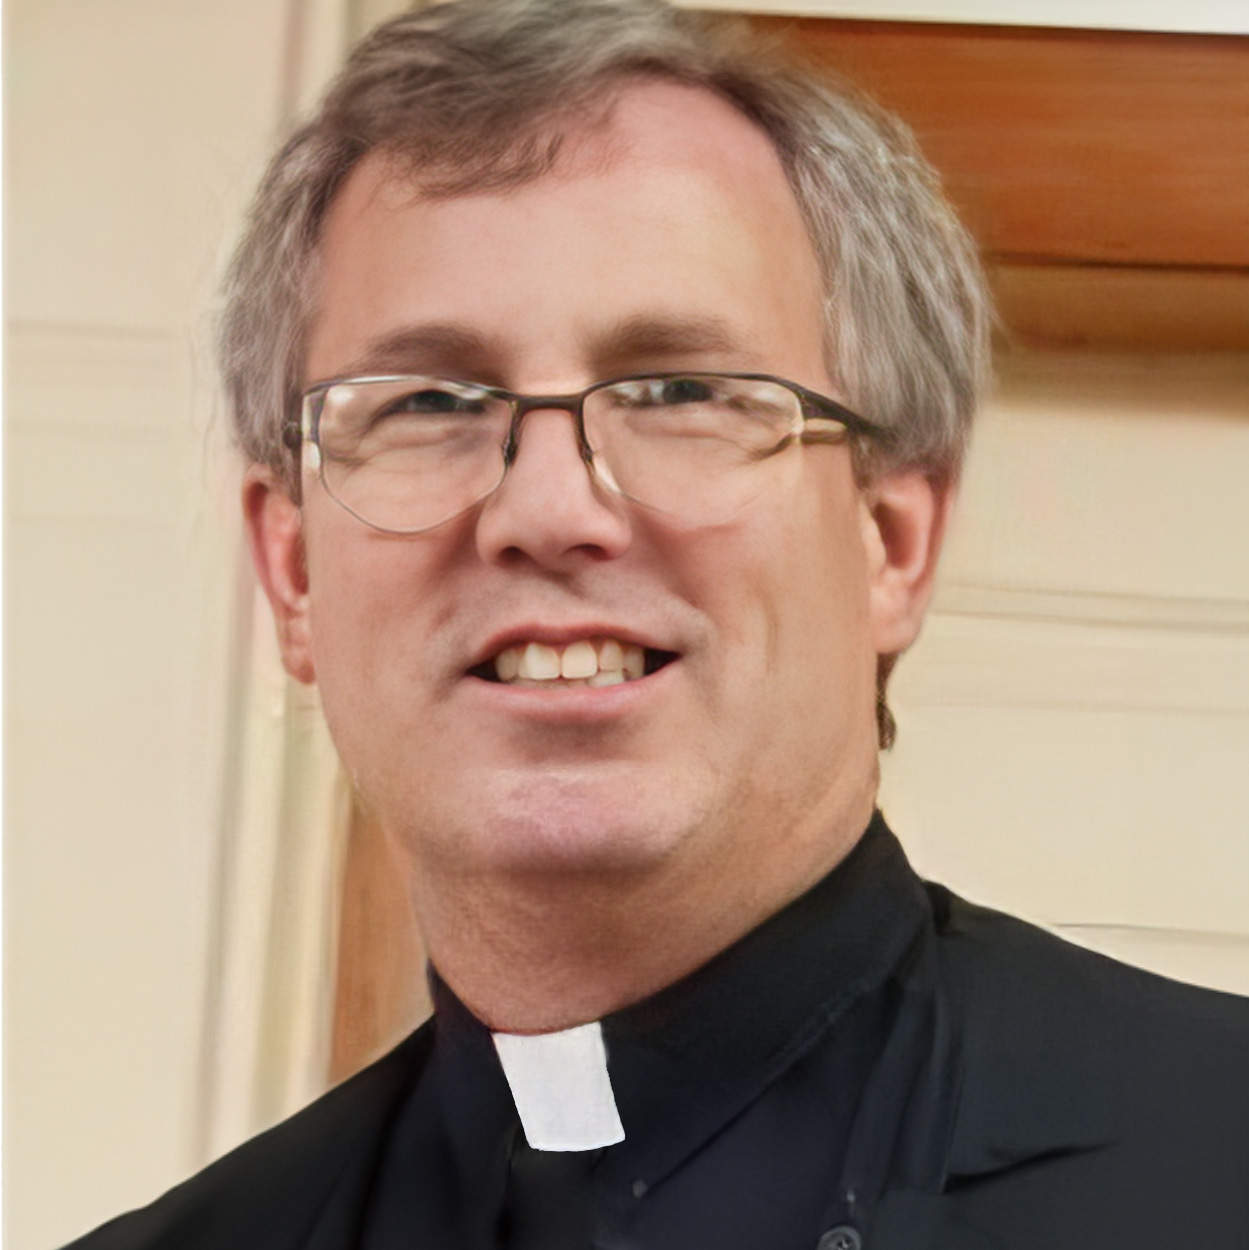 The Rev. Jeff Milsten